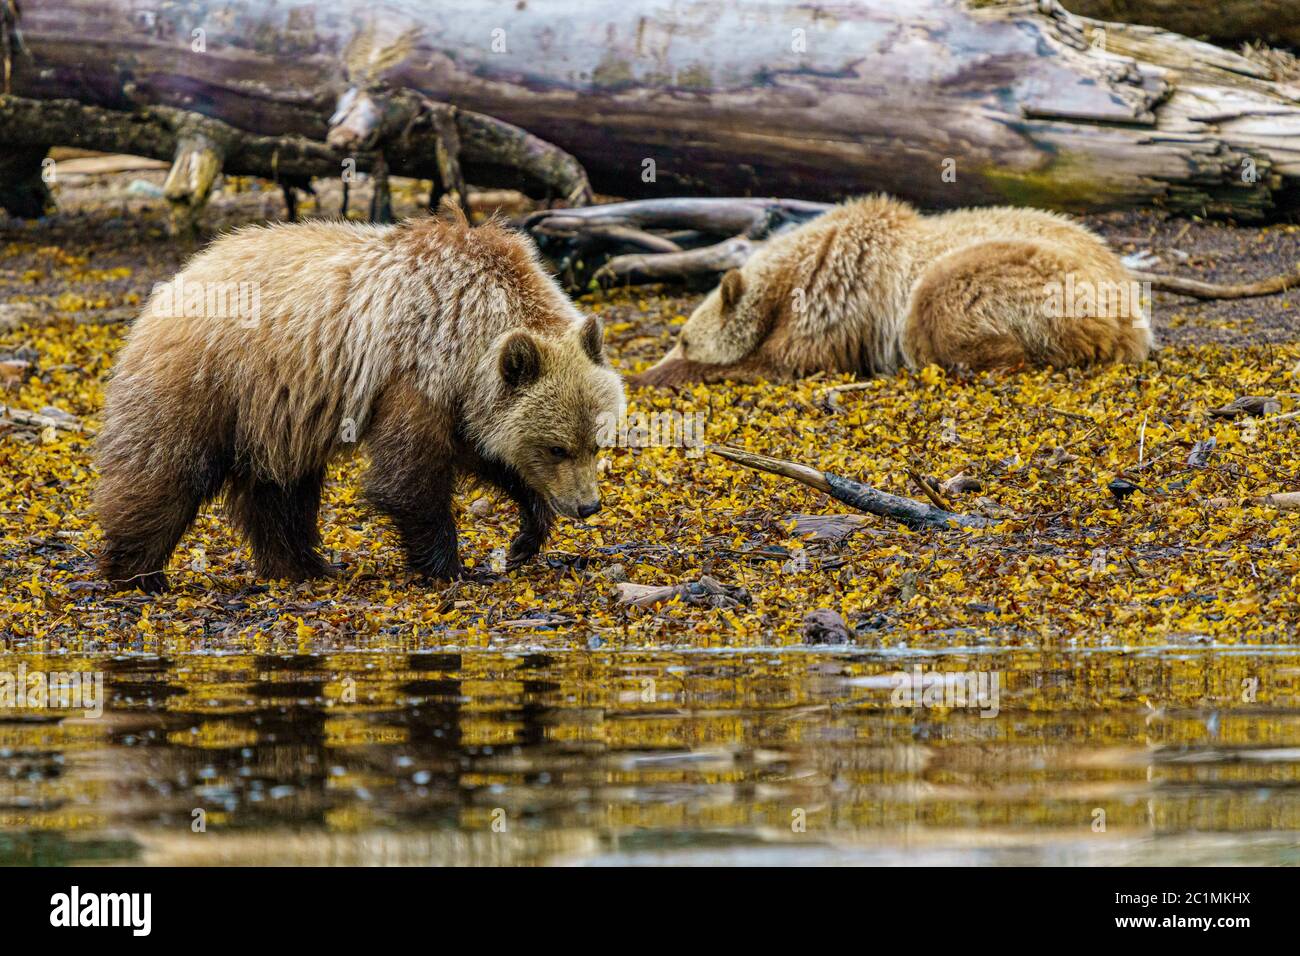 Grizzly oso cachorros walkiong y descansando a lo largo de la zona intertal, Glendale Cove, Territorio de las primeras Naciones, Columbia Británica, Canadá Foto de stock